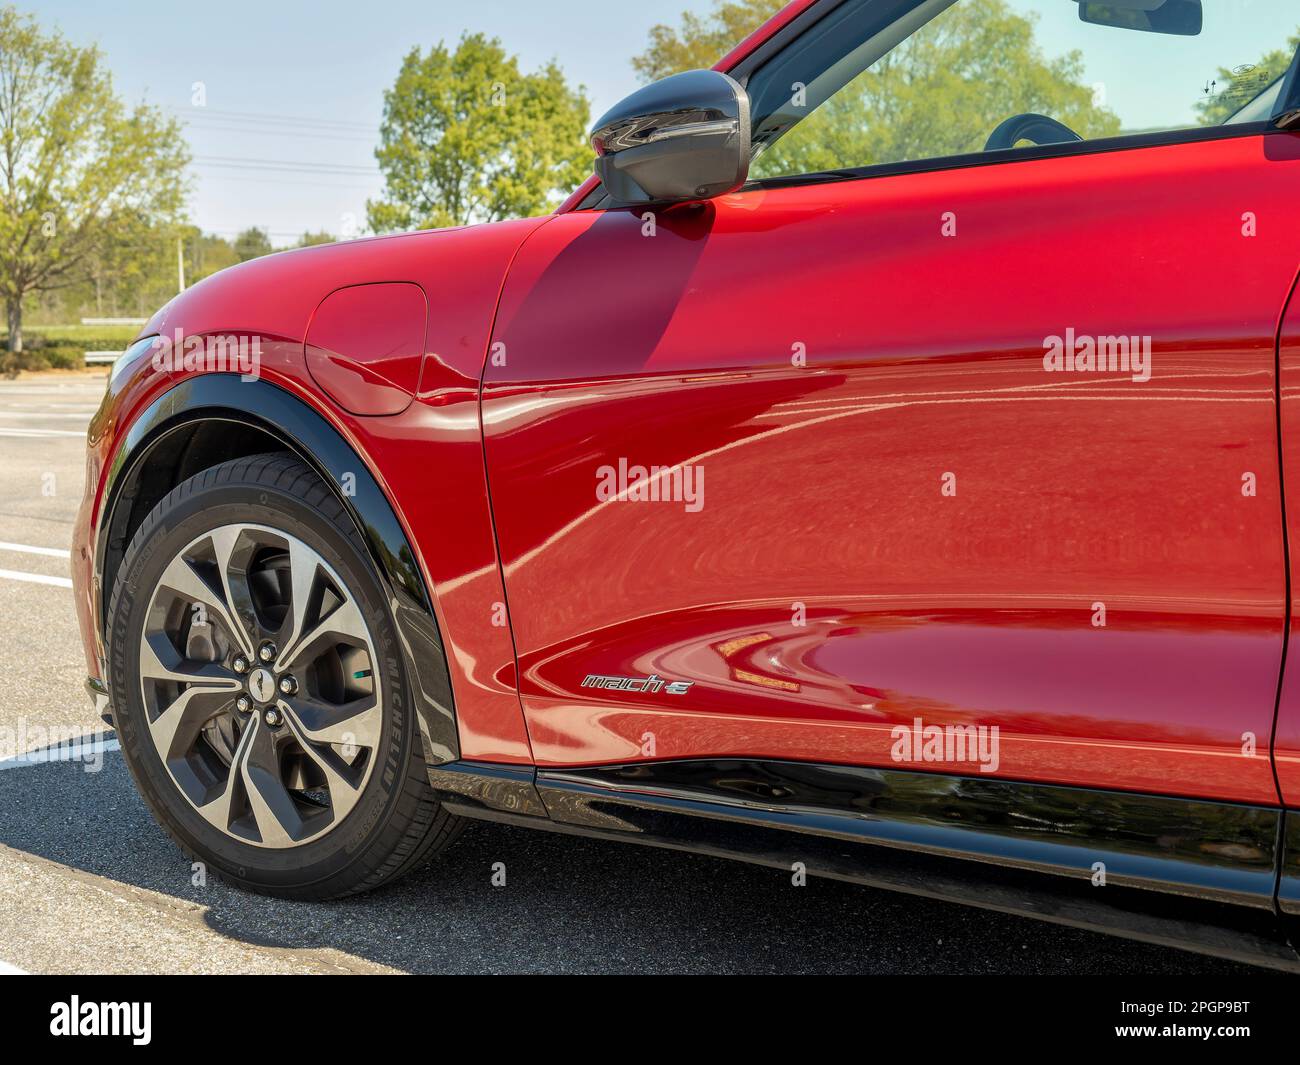 Voiture électrique Ford Mustang Mach E entièrement électrique, de couleur rouge, conçue pour être une voiture ou un véhicule écologique durable en Alabama, aux États-Unis. Banque D'Images